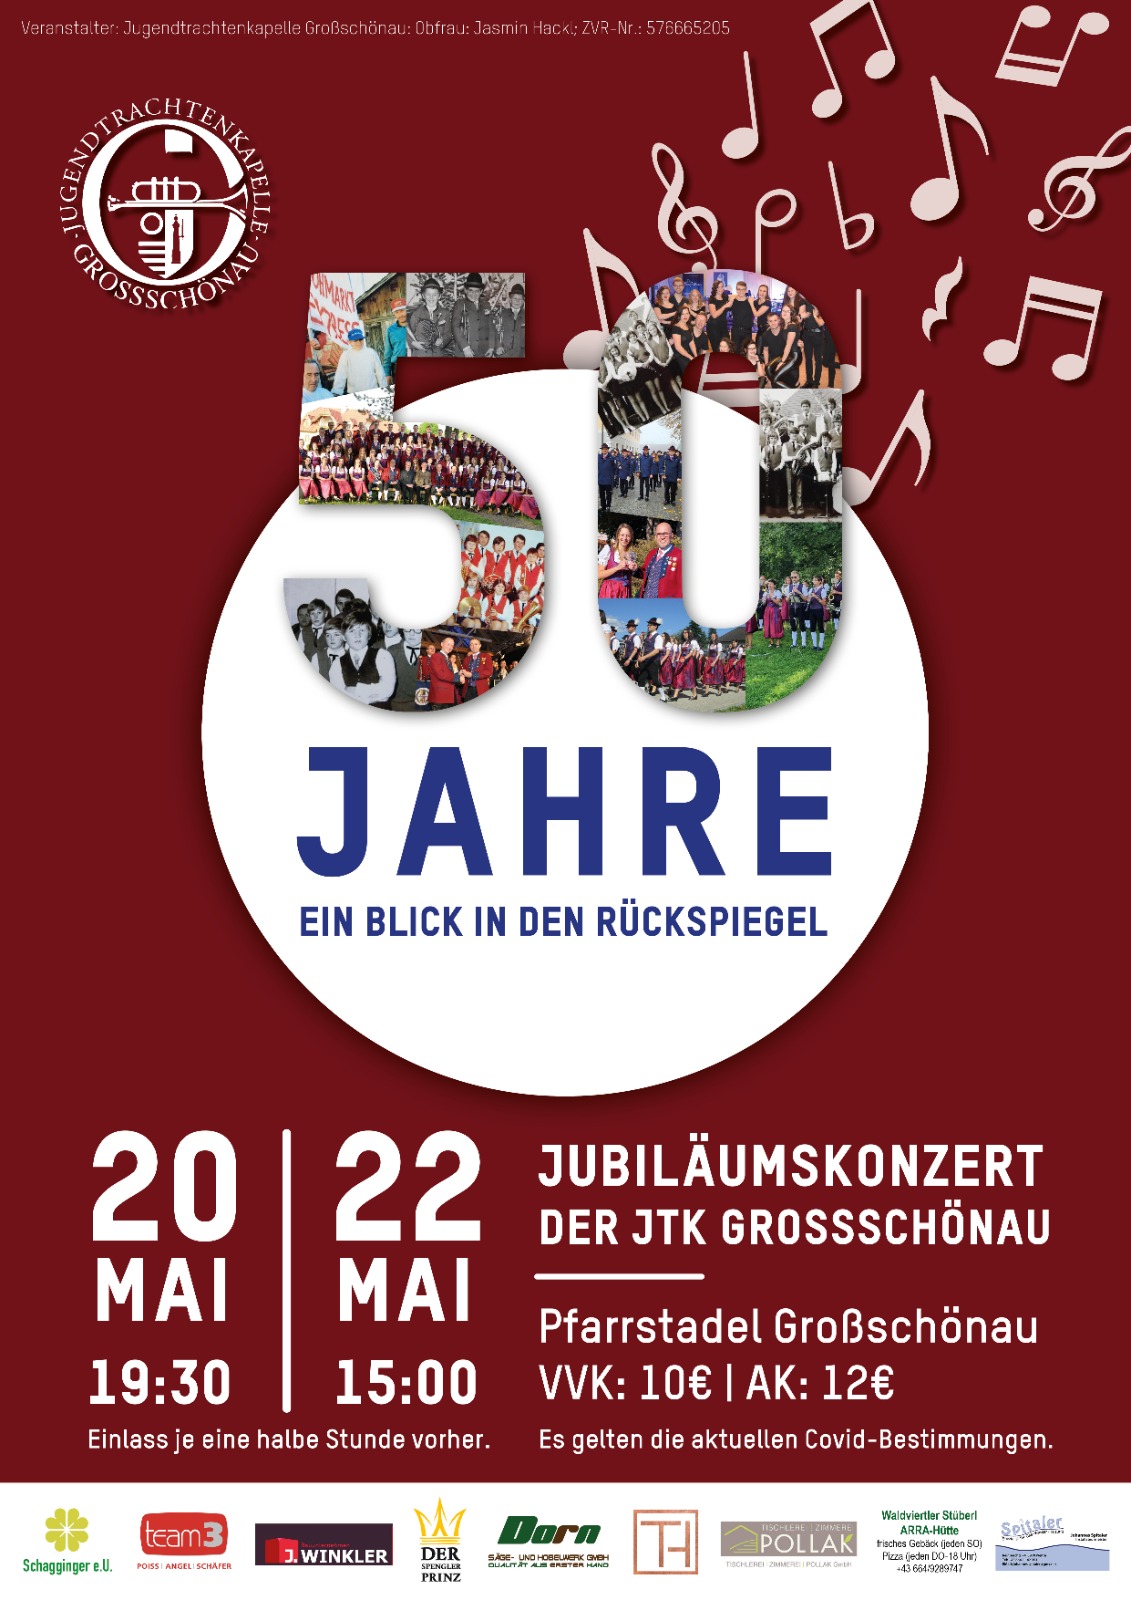 50 Jahre Jugendtrachtenkapelle Großschönau